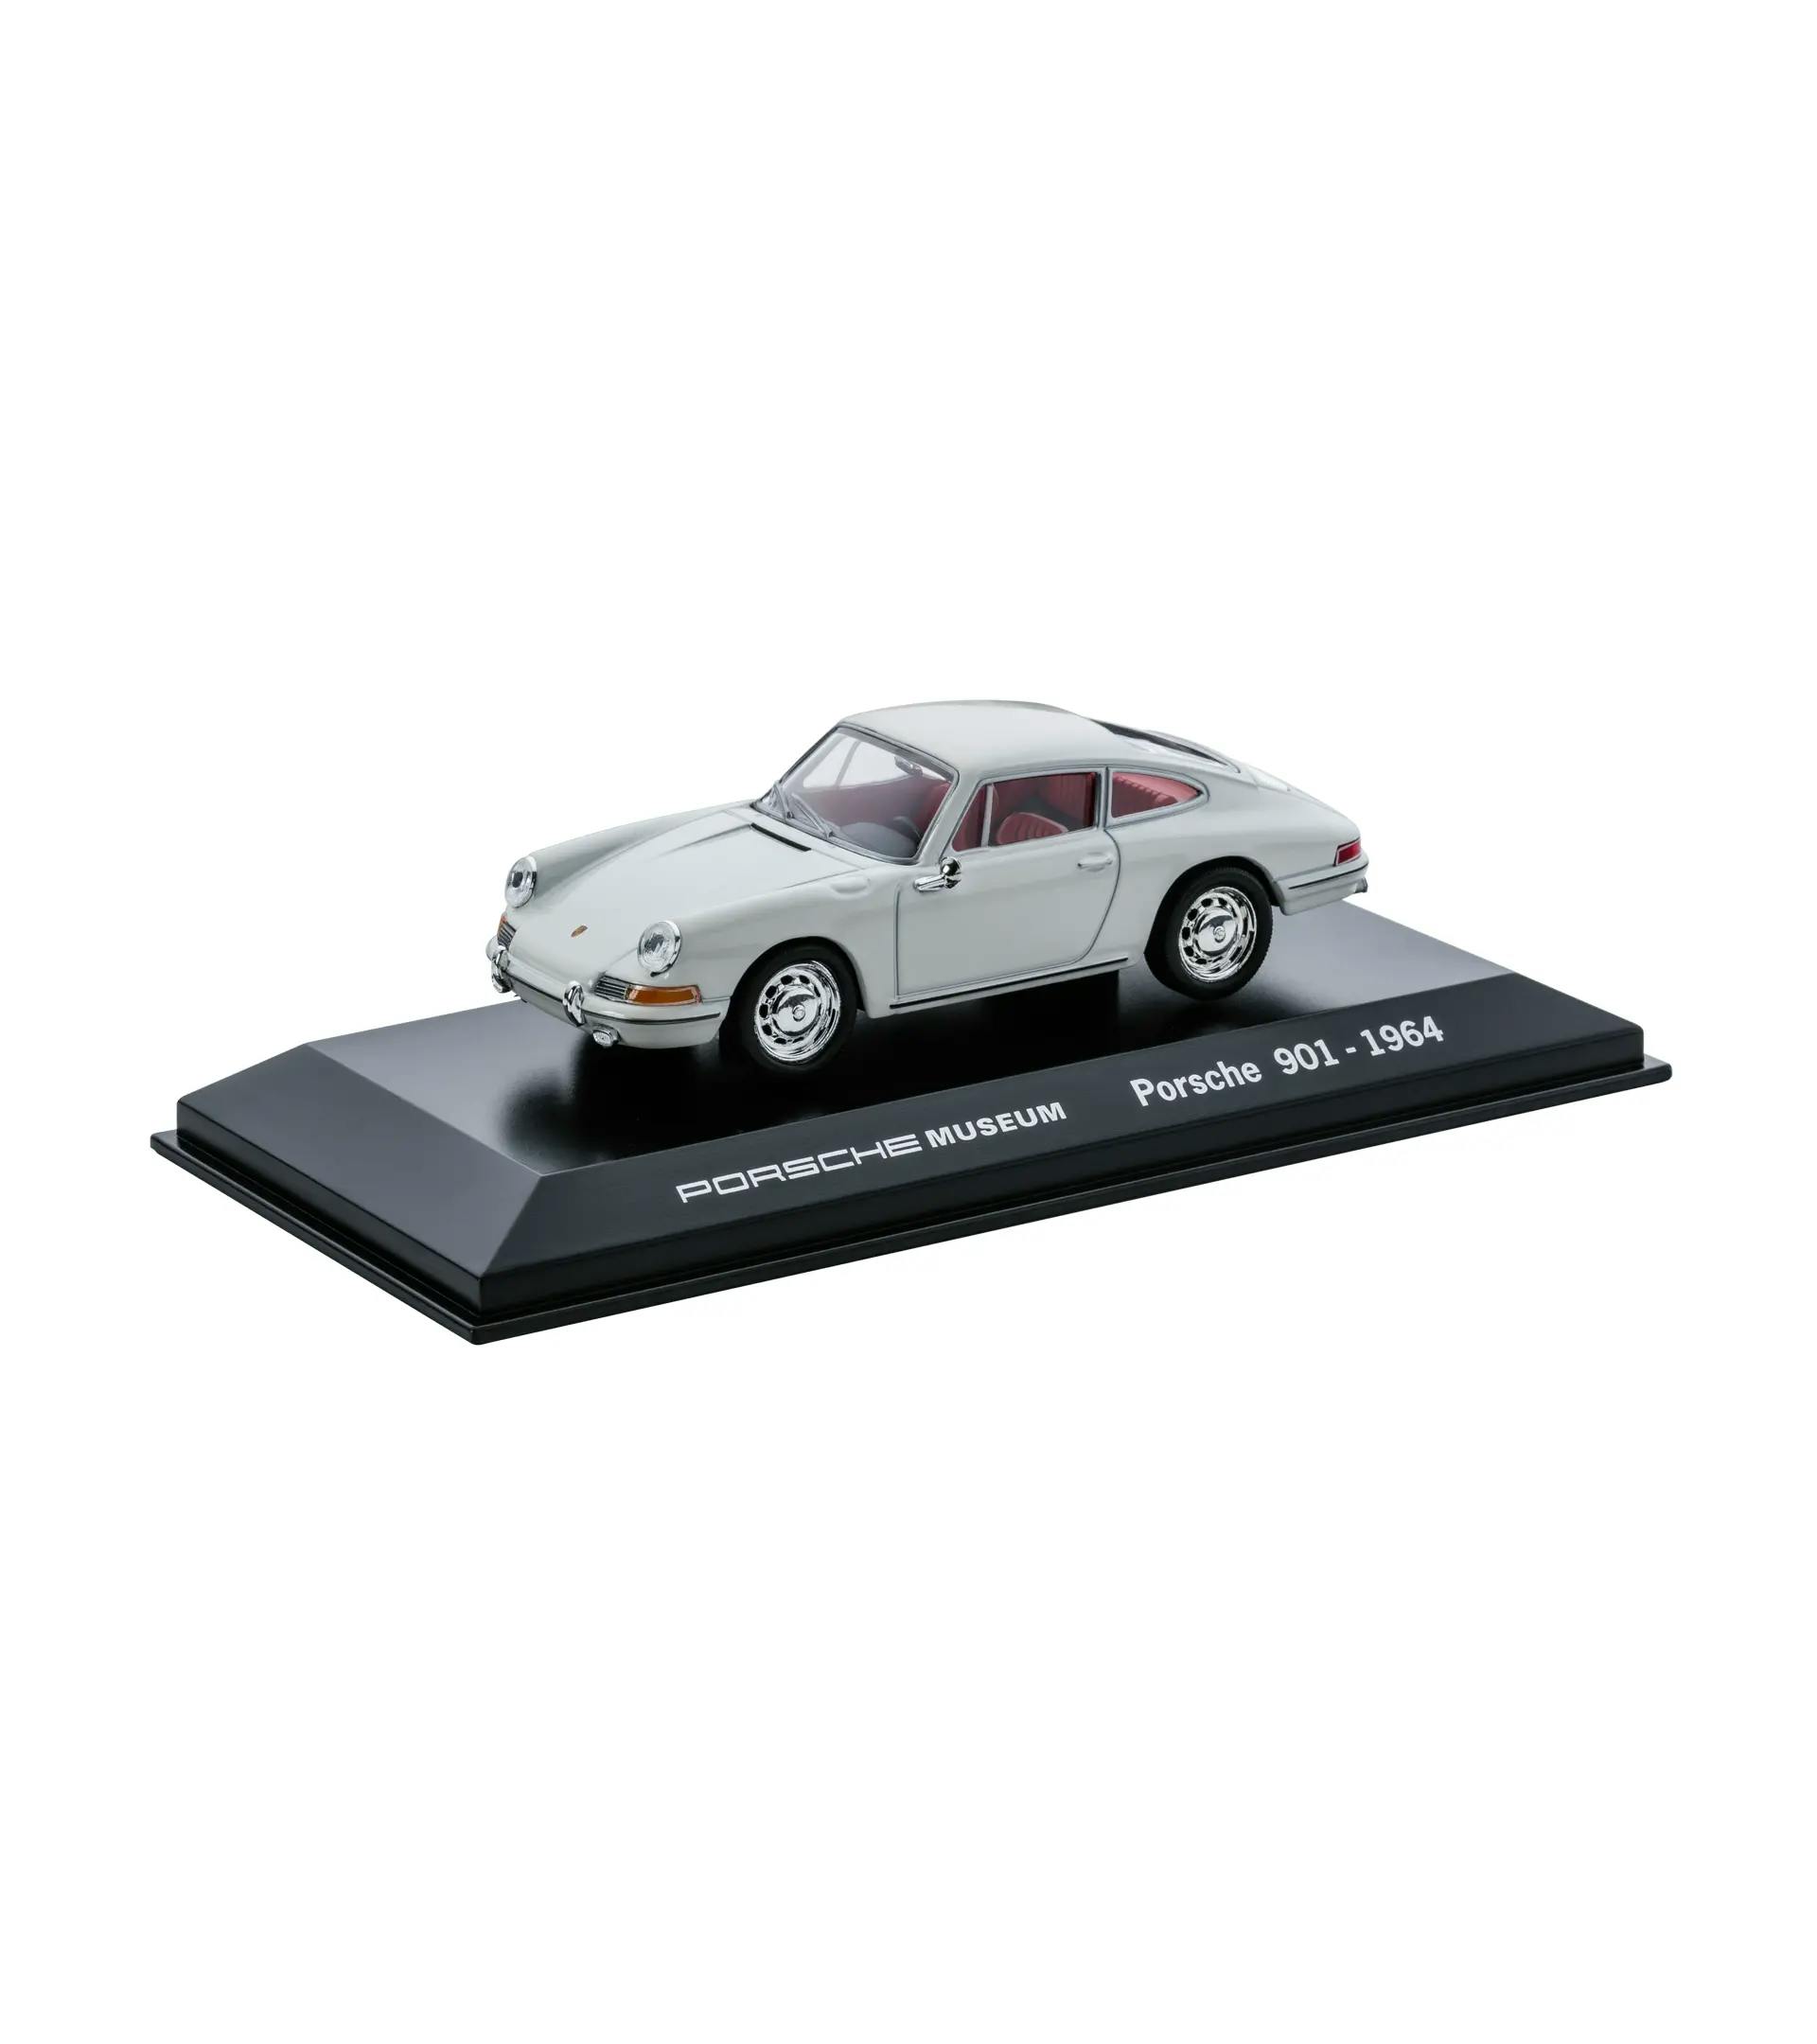 Porsche 901 1